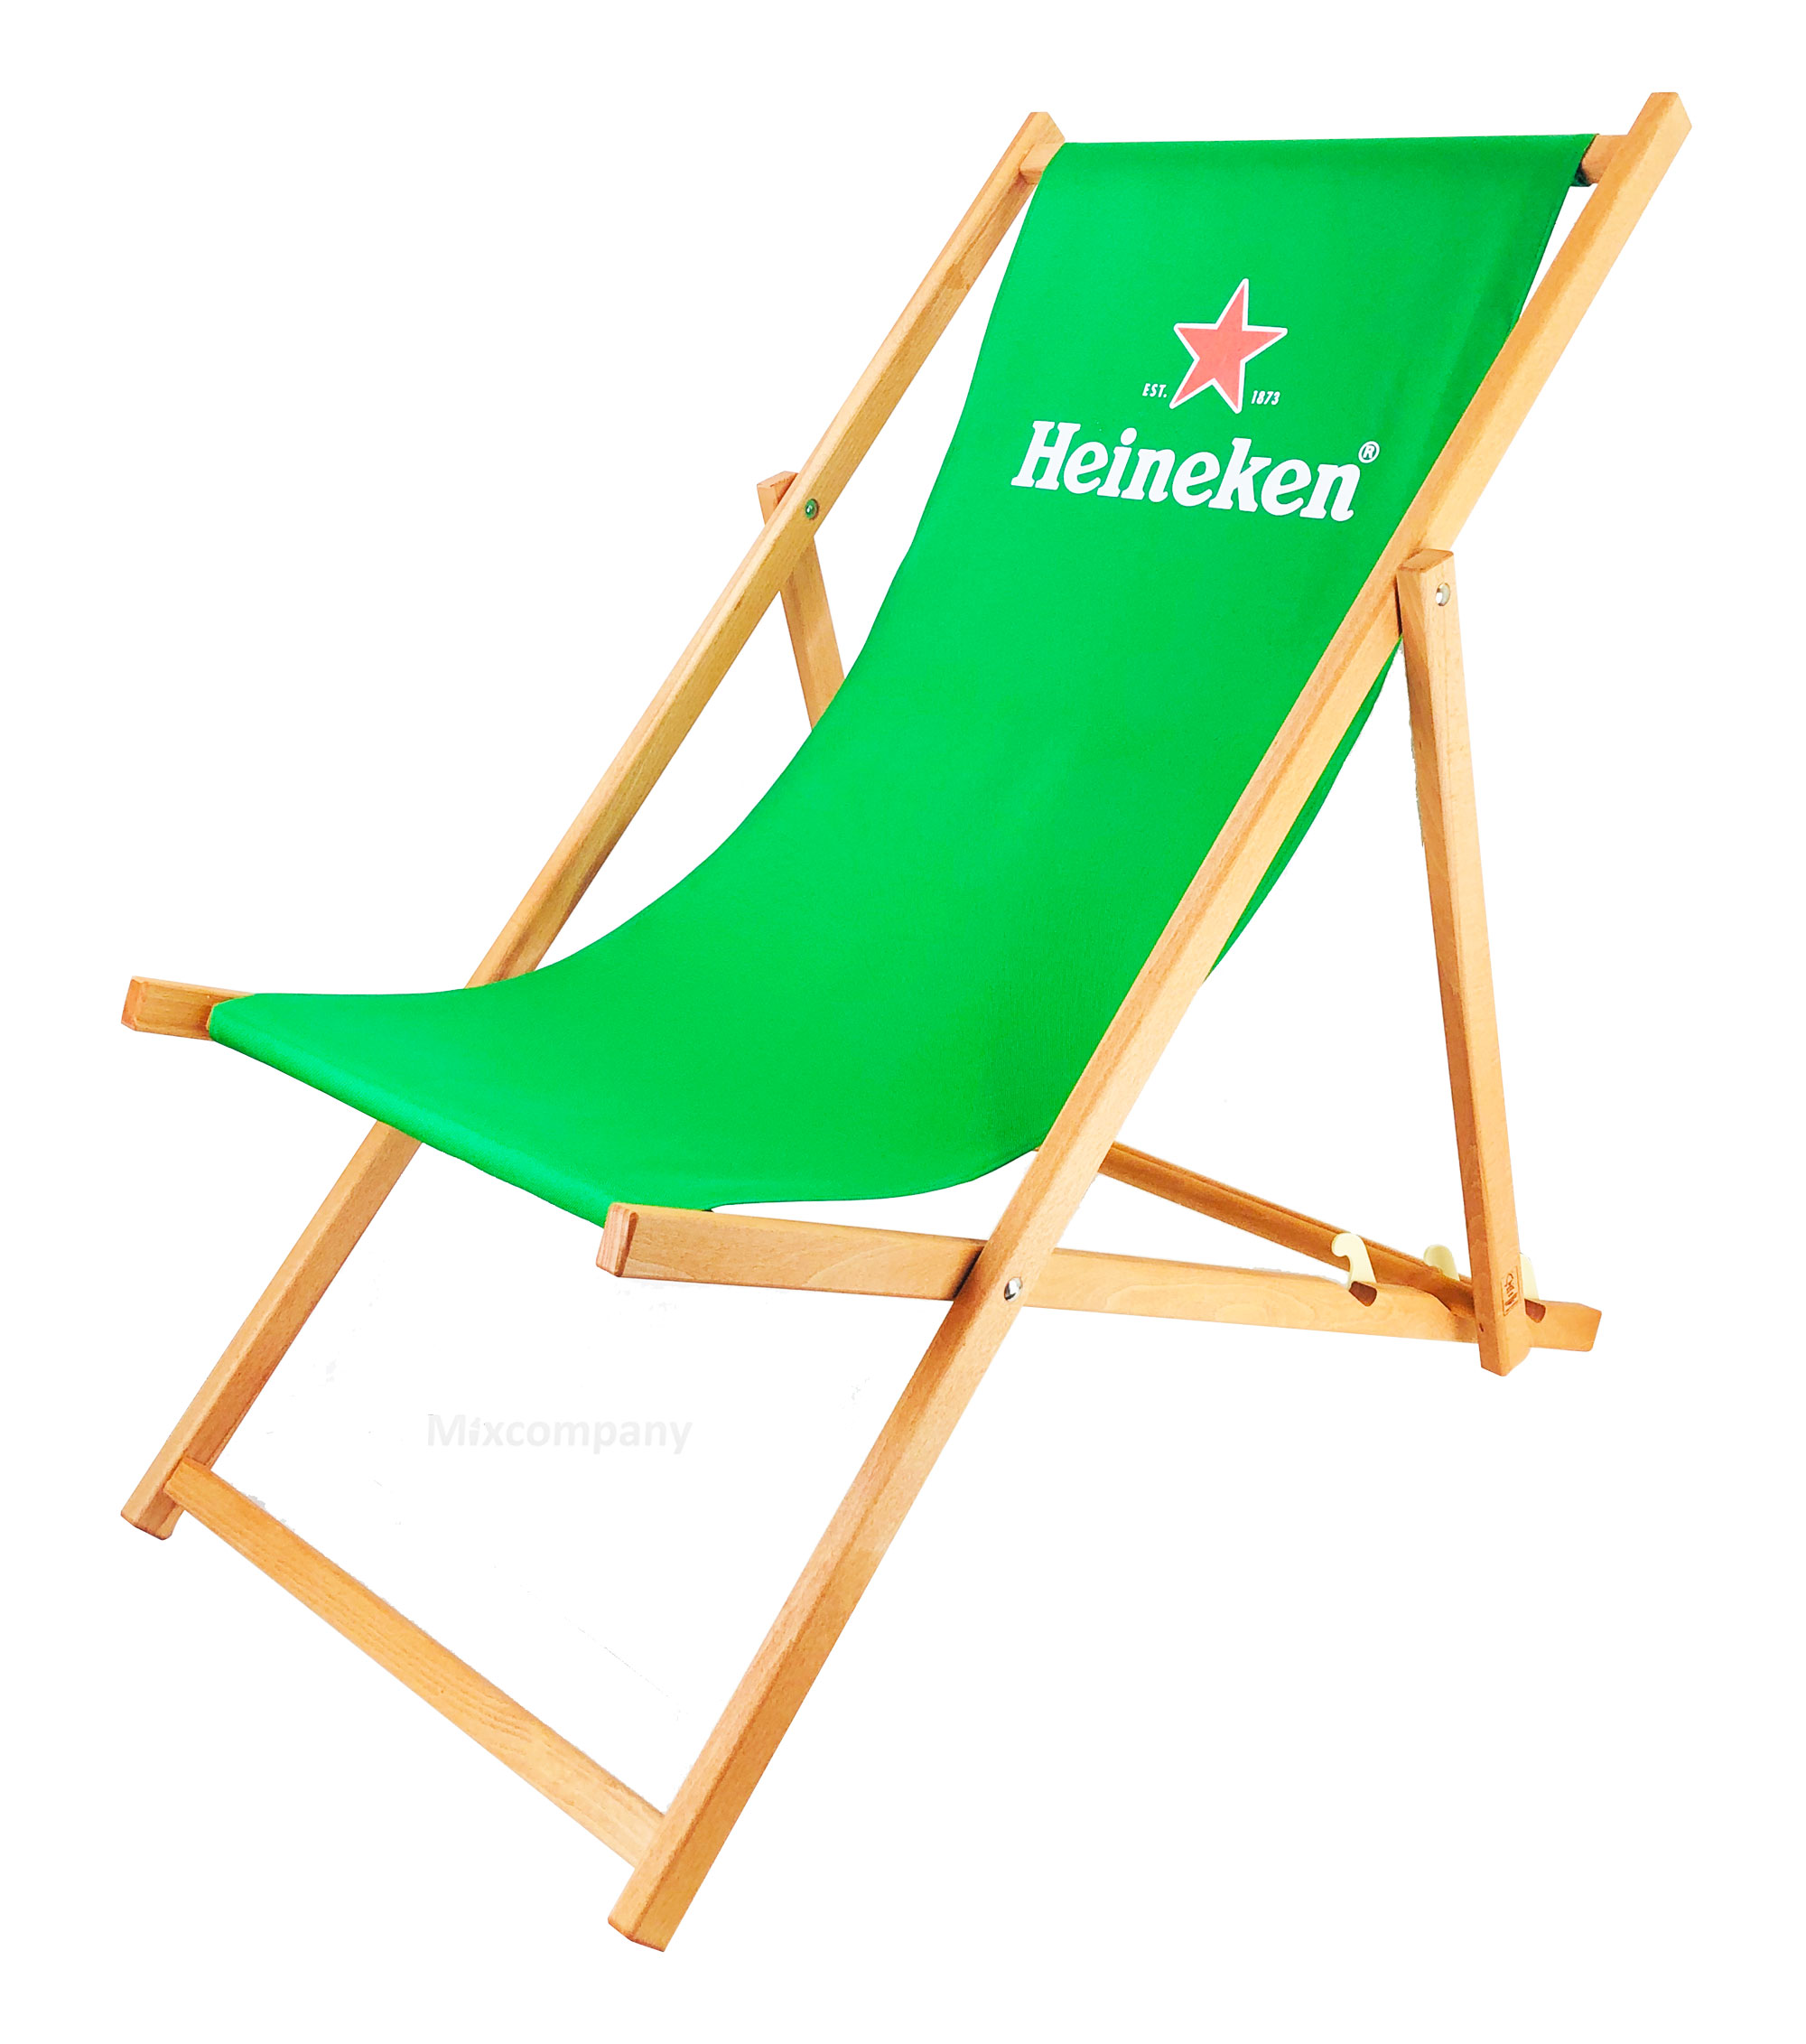 Heineken Bier Liegestuhl aus Buchenholz dreifach verstellbar Beach Party Festival Sommer Relaxliege